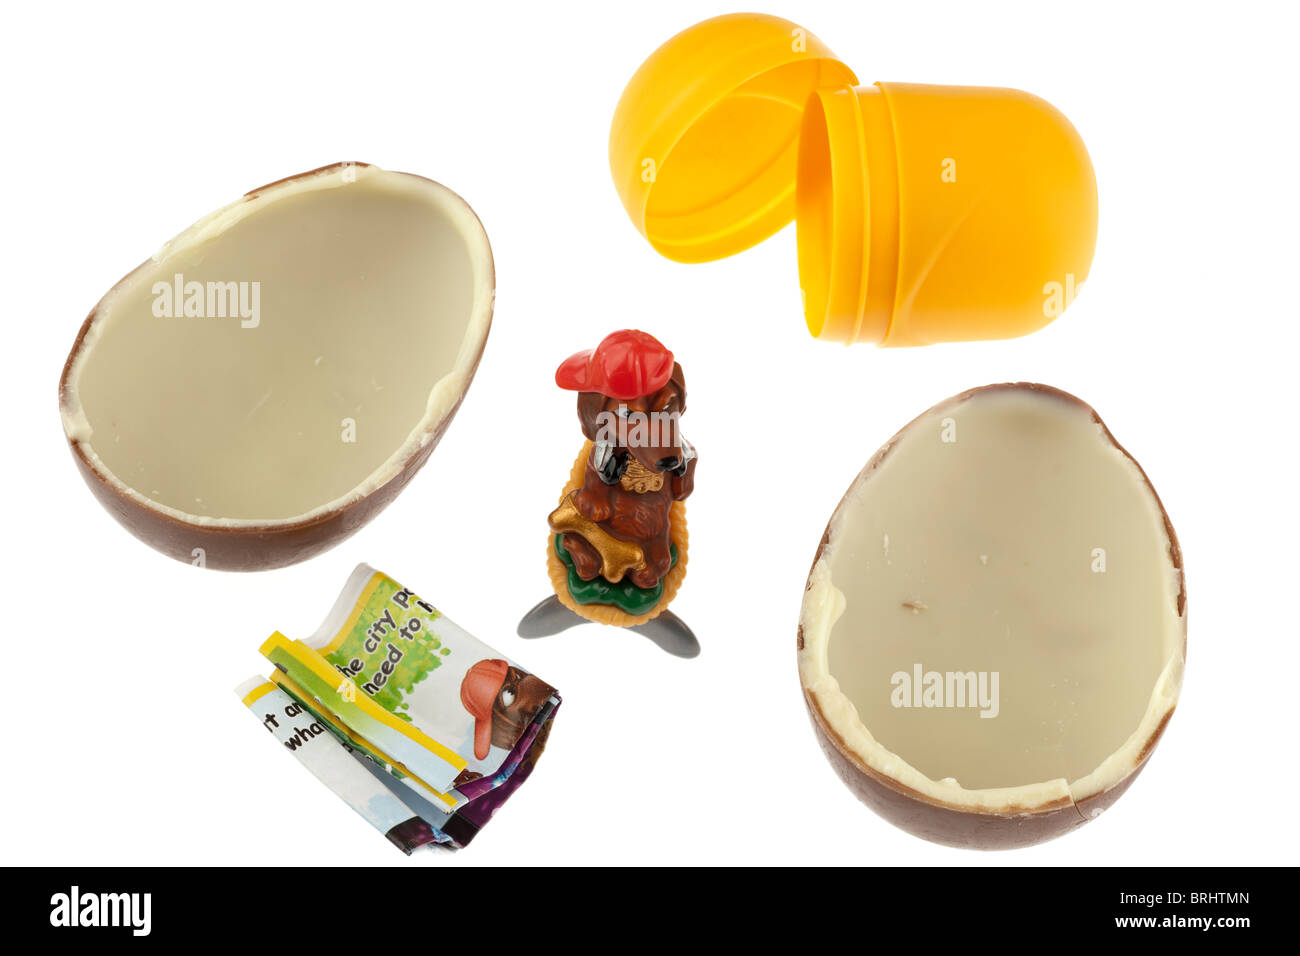 Kinder sorpresa uovo di cioccolato scorporato e suddiviso in due metà con il giocattolo e contenitore in plastica Foto Stock